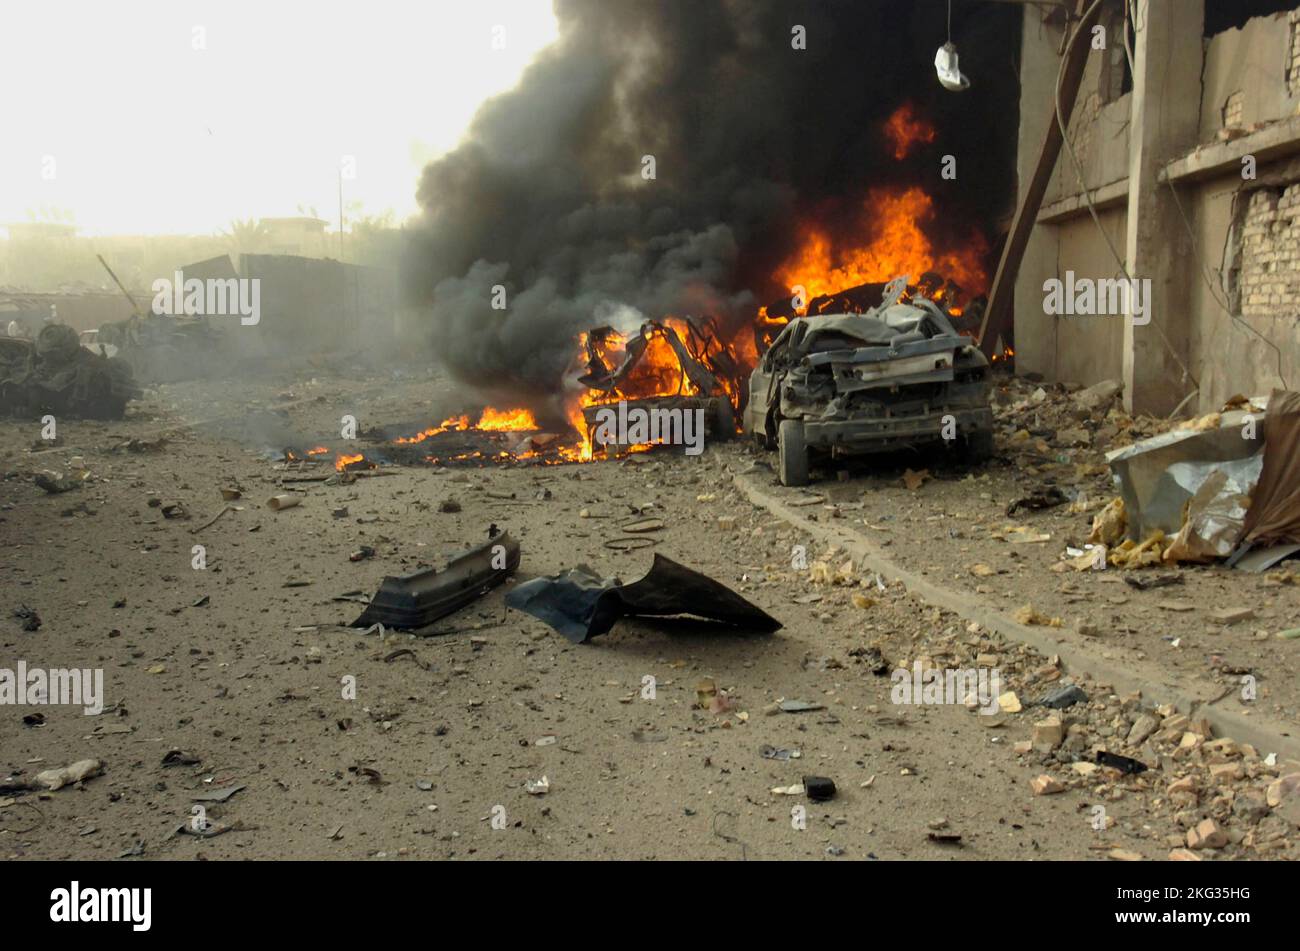 BAGDAD, IRAQ - 27 de agosto de 2006 - Un 'vehículo nacido de un explosivo improvisado' o coche bomba después de explotar en una calle fuera del periódico Al Sabah Foto de stock